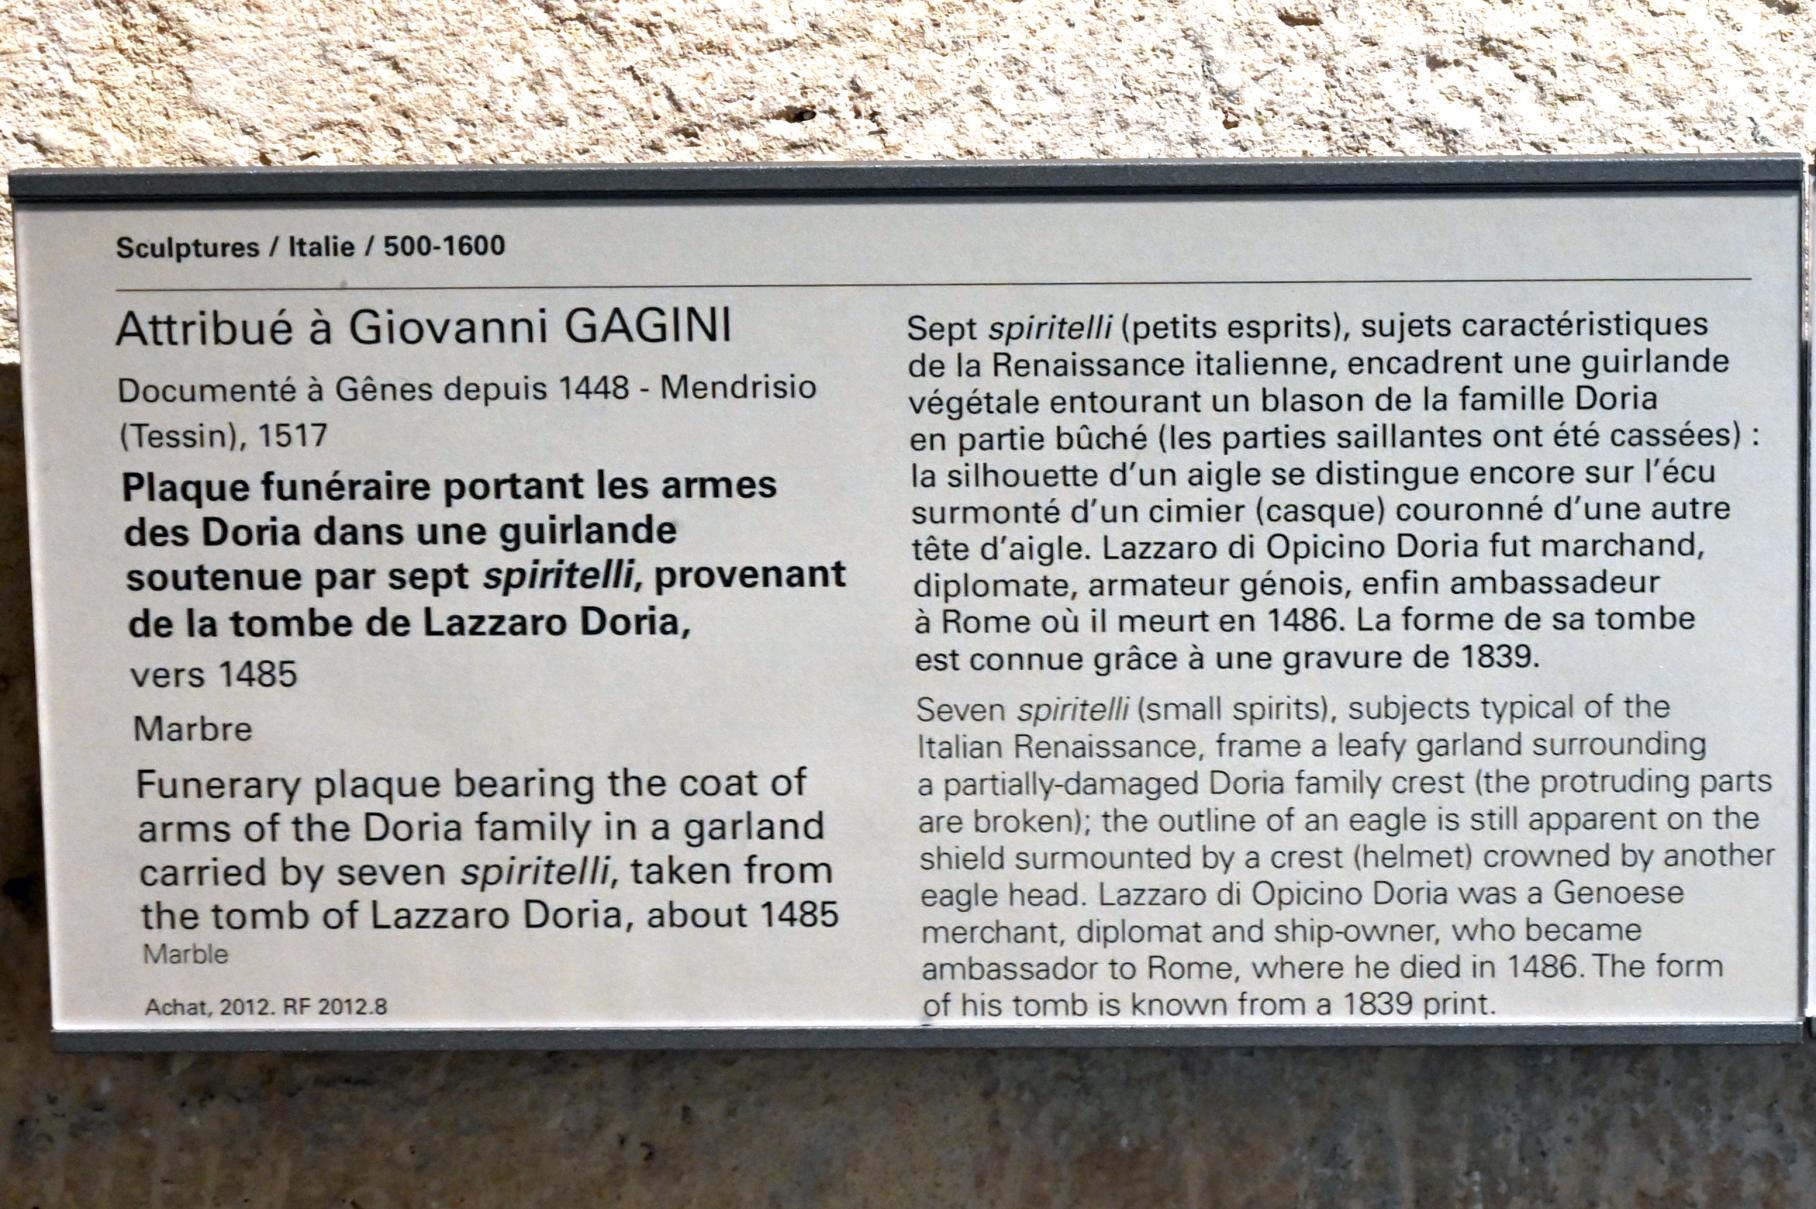 Giovanni Gaggini (Gagini) (1485), Grabtafel mit dem Wappen der Doria in einer von sieben Spiritelli getragenen Girlande aus dem Grab von Lazzaro Doria, Paris, Musée du Louvre, Saal 160, um 1485, Bild 2/3